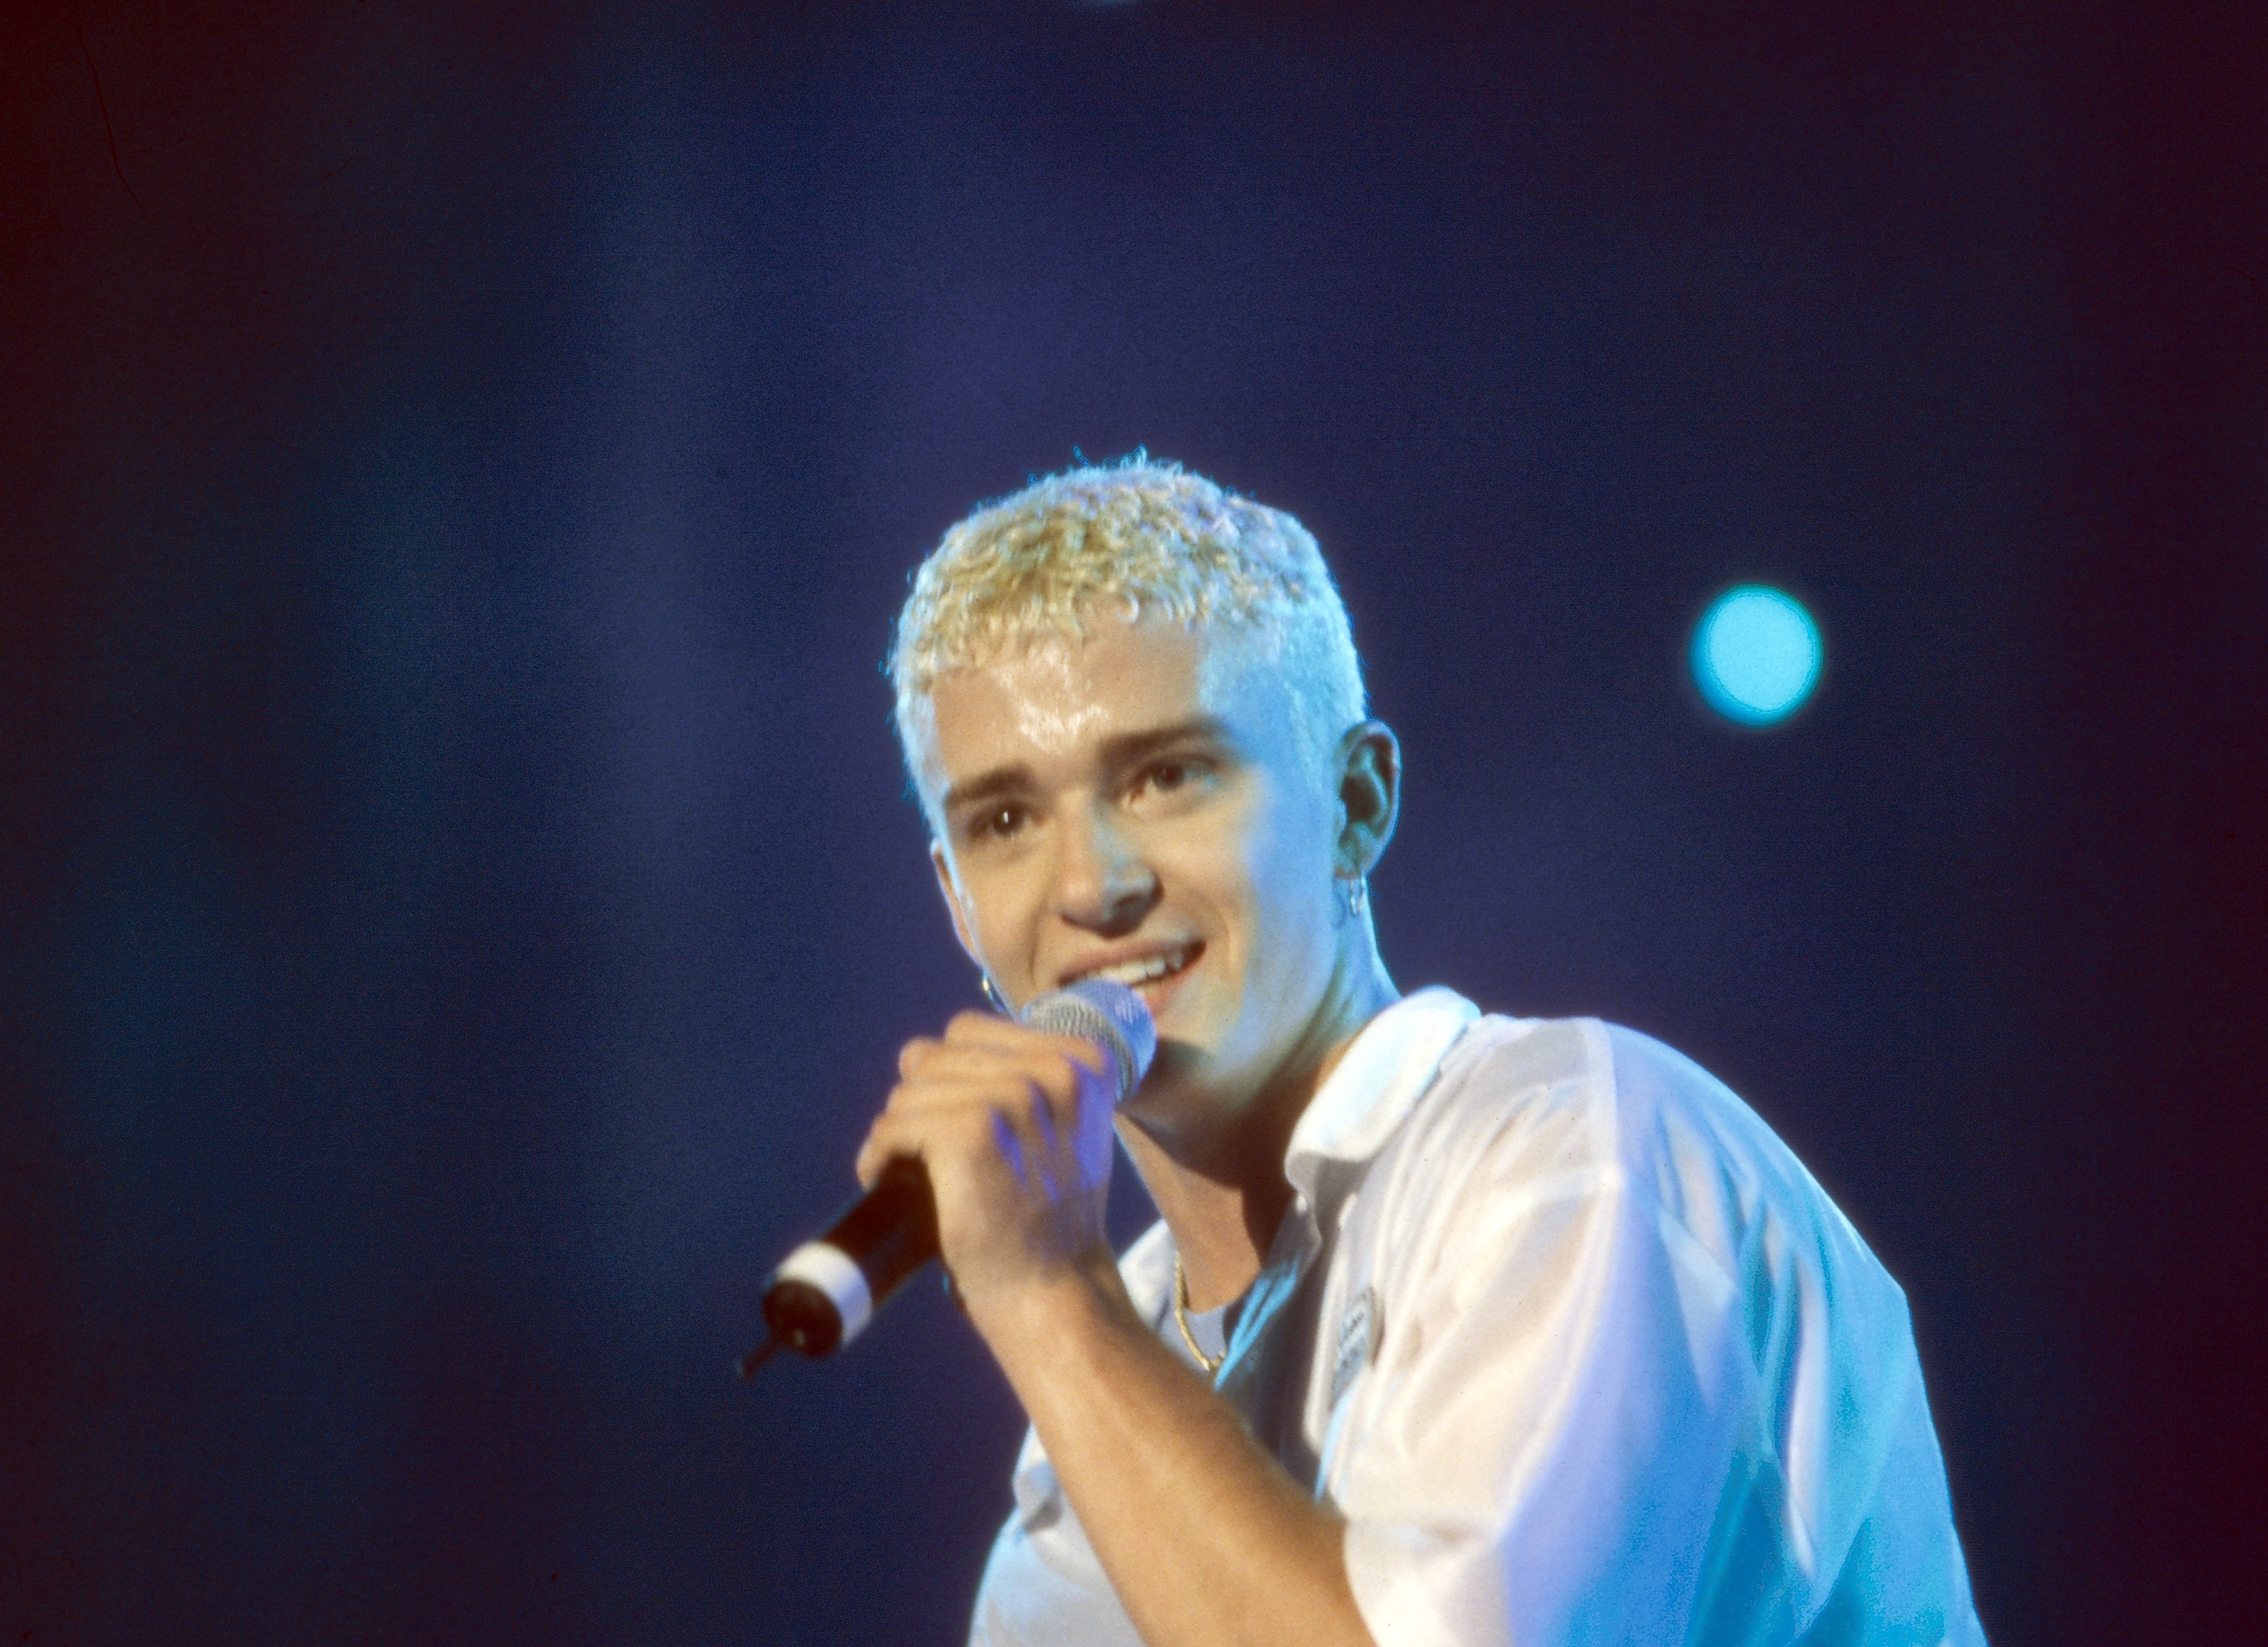 Justin Timberlake actúa en el escenario con su banda *NSYNC en 1997 en Munich, Alemania. | Foto: Getty Images